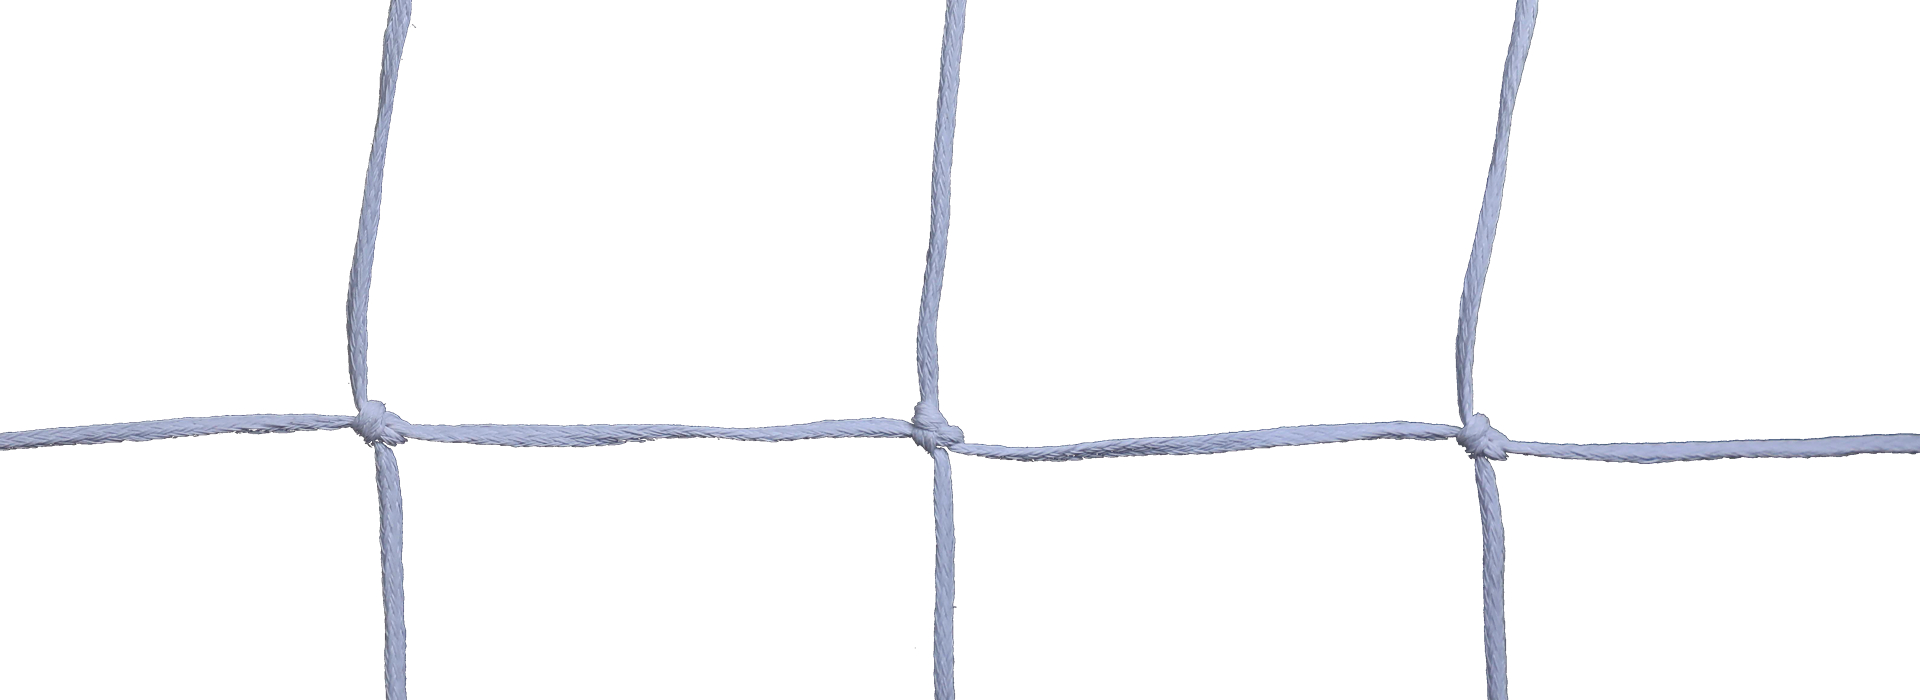 Handball nets